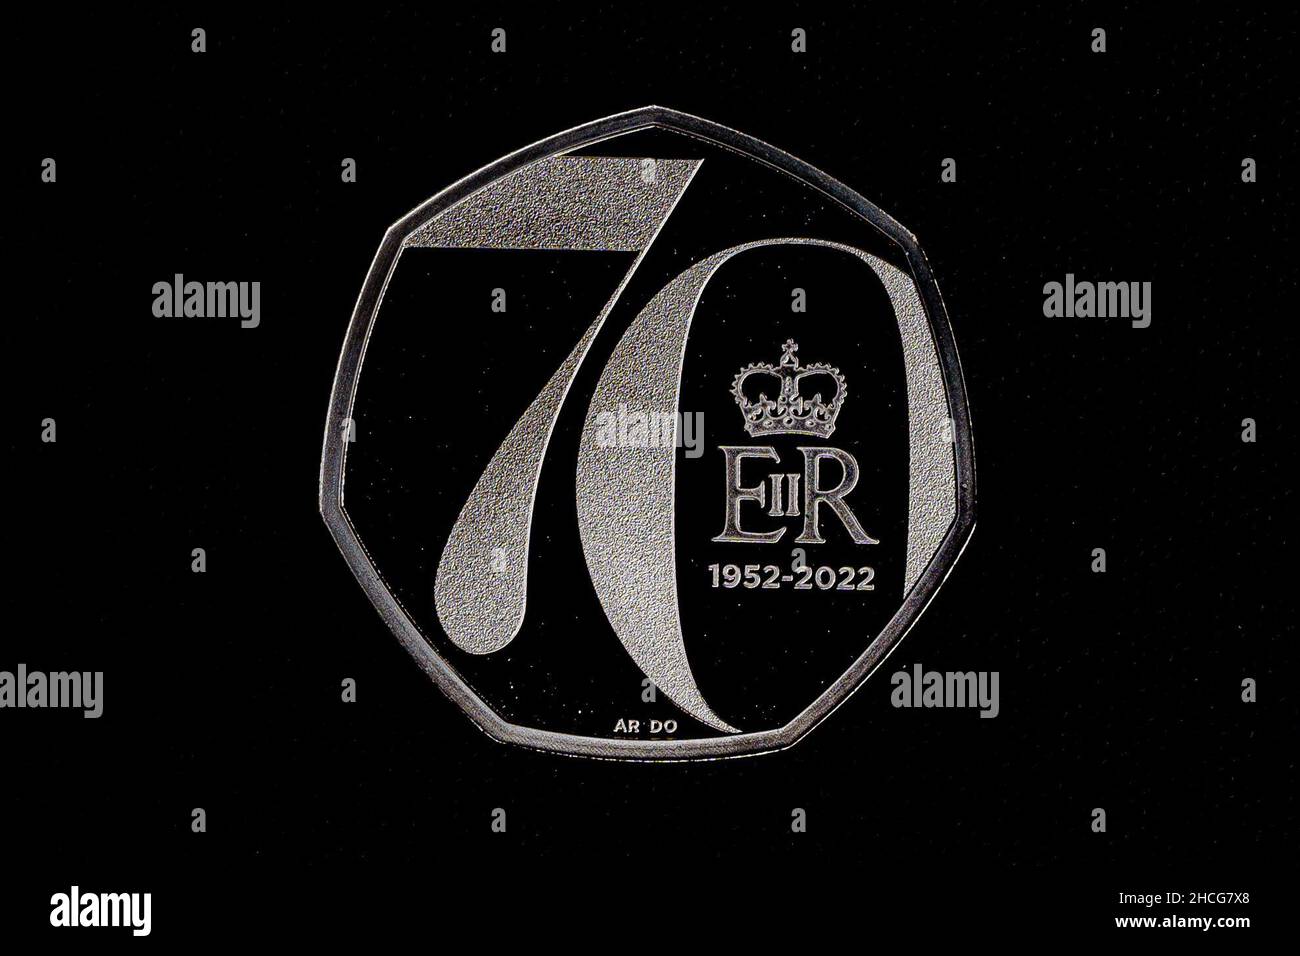 Ein Platin-Jubiläum Ihrer Majestät der Königin 50p-Münze, Teil der Veröffentlichung von fünf neuen Münzdesigns der Royal Mint für 2022, die wichtige Ereignisse und Jahrestage im Laufe des Jahres feiern, darunter eine 50p- und eine £5-Krone zur Feier des Platin-Jubiläums der Königin. Jede der Münzen zeigt ein neues und einzigartiges Design eines Auftragskünstlers und das von Jody Clark entworfene Vorderporträt Ihrer Majestät der Königin. Ausgabedatum: Mittwoch, 28. Dezember 2021. Stockfoto